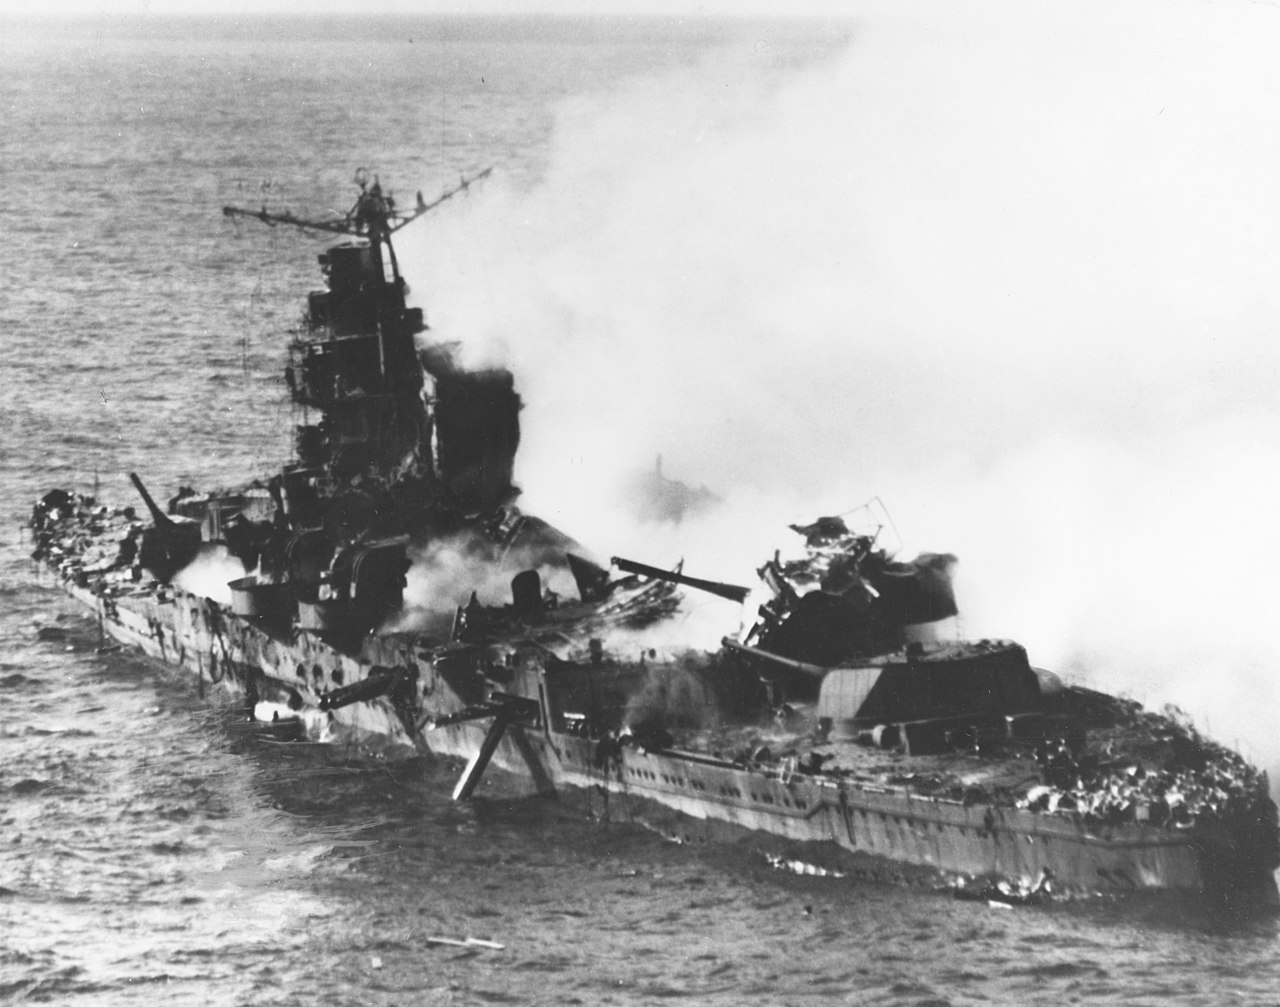 Der sinkende schwere Kreuzer Mikuma sinking am 6 Juni 1942